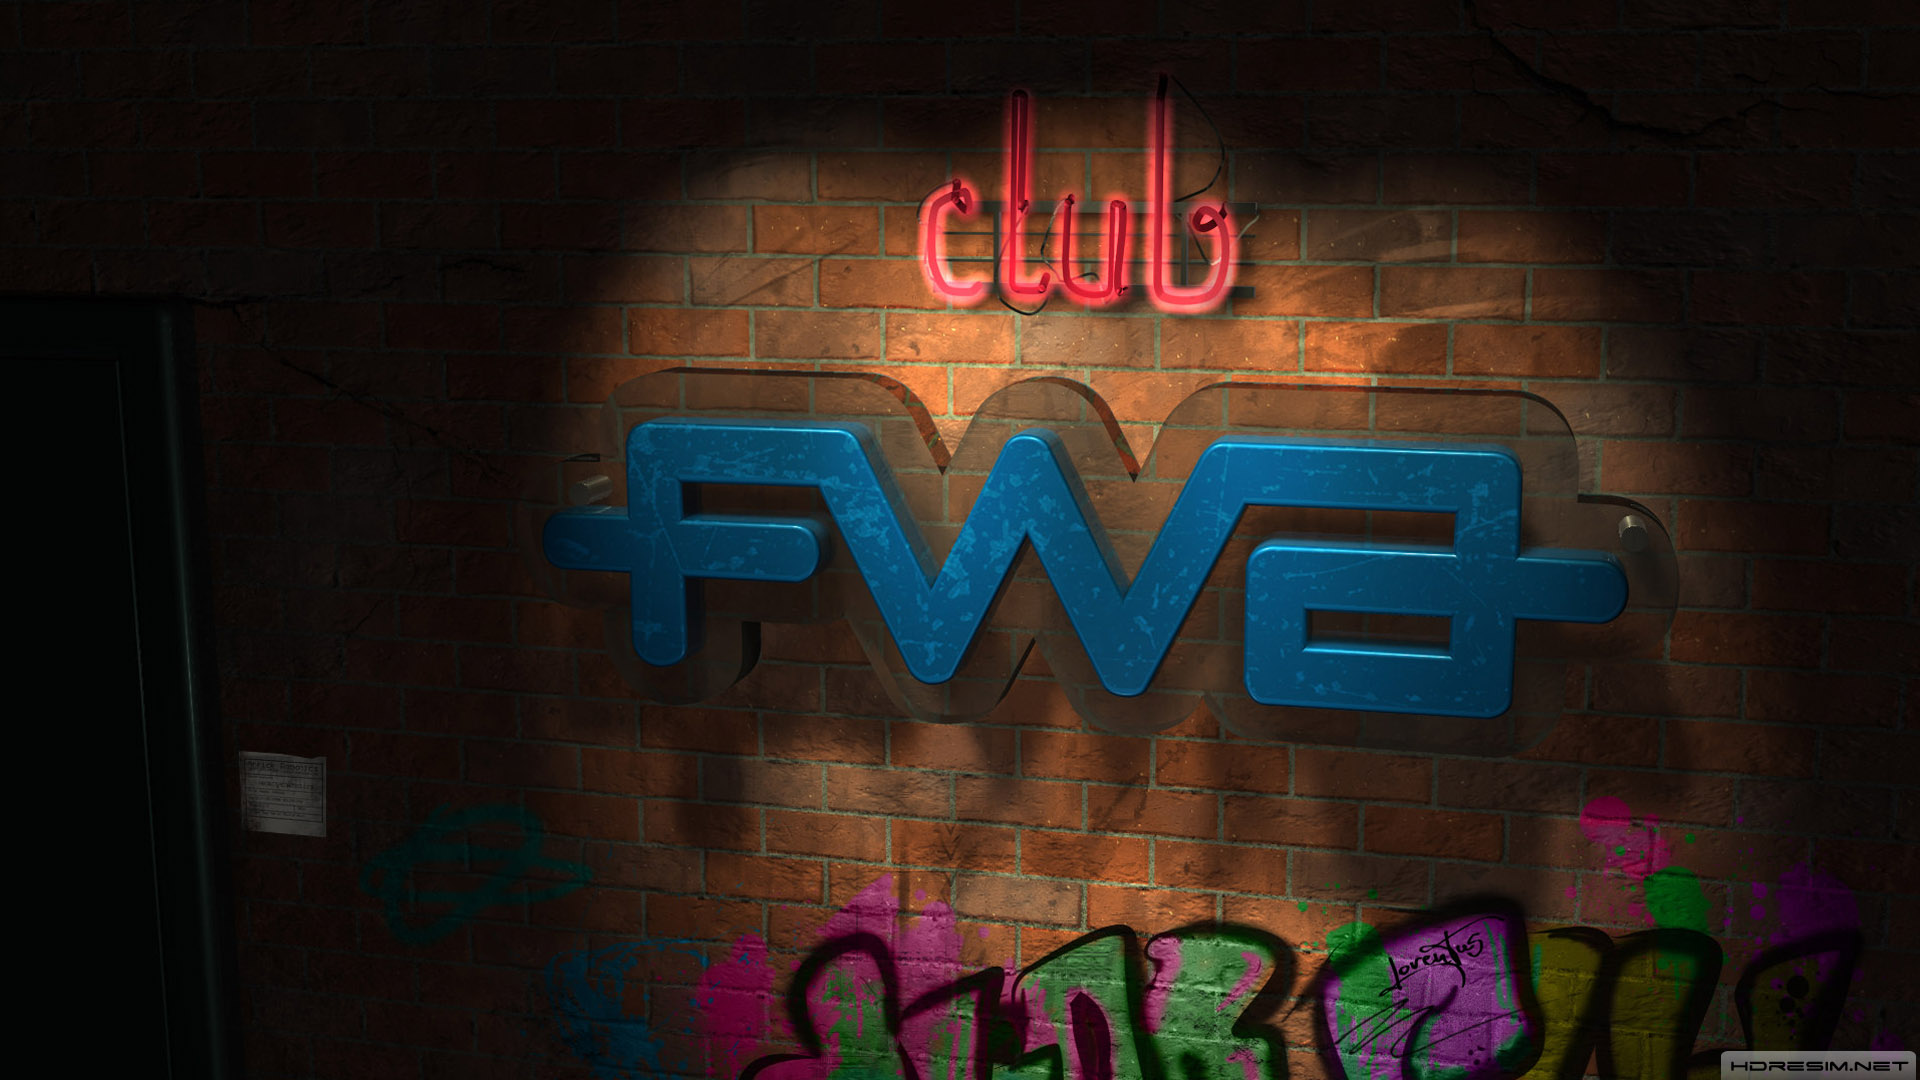 fwa,soyut,club